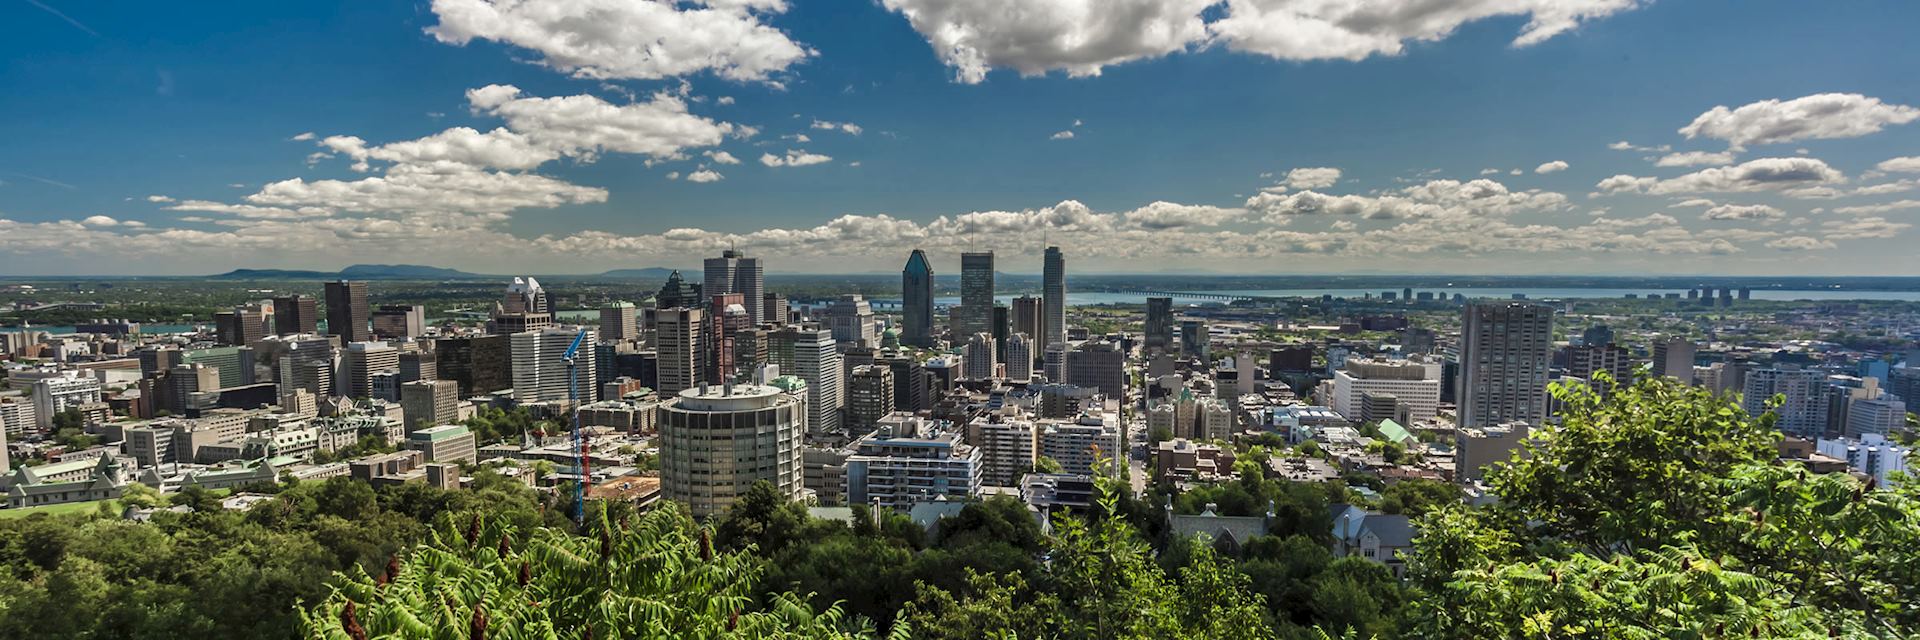 Montréal skyline in Canada